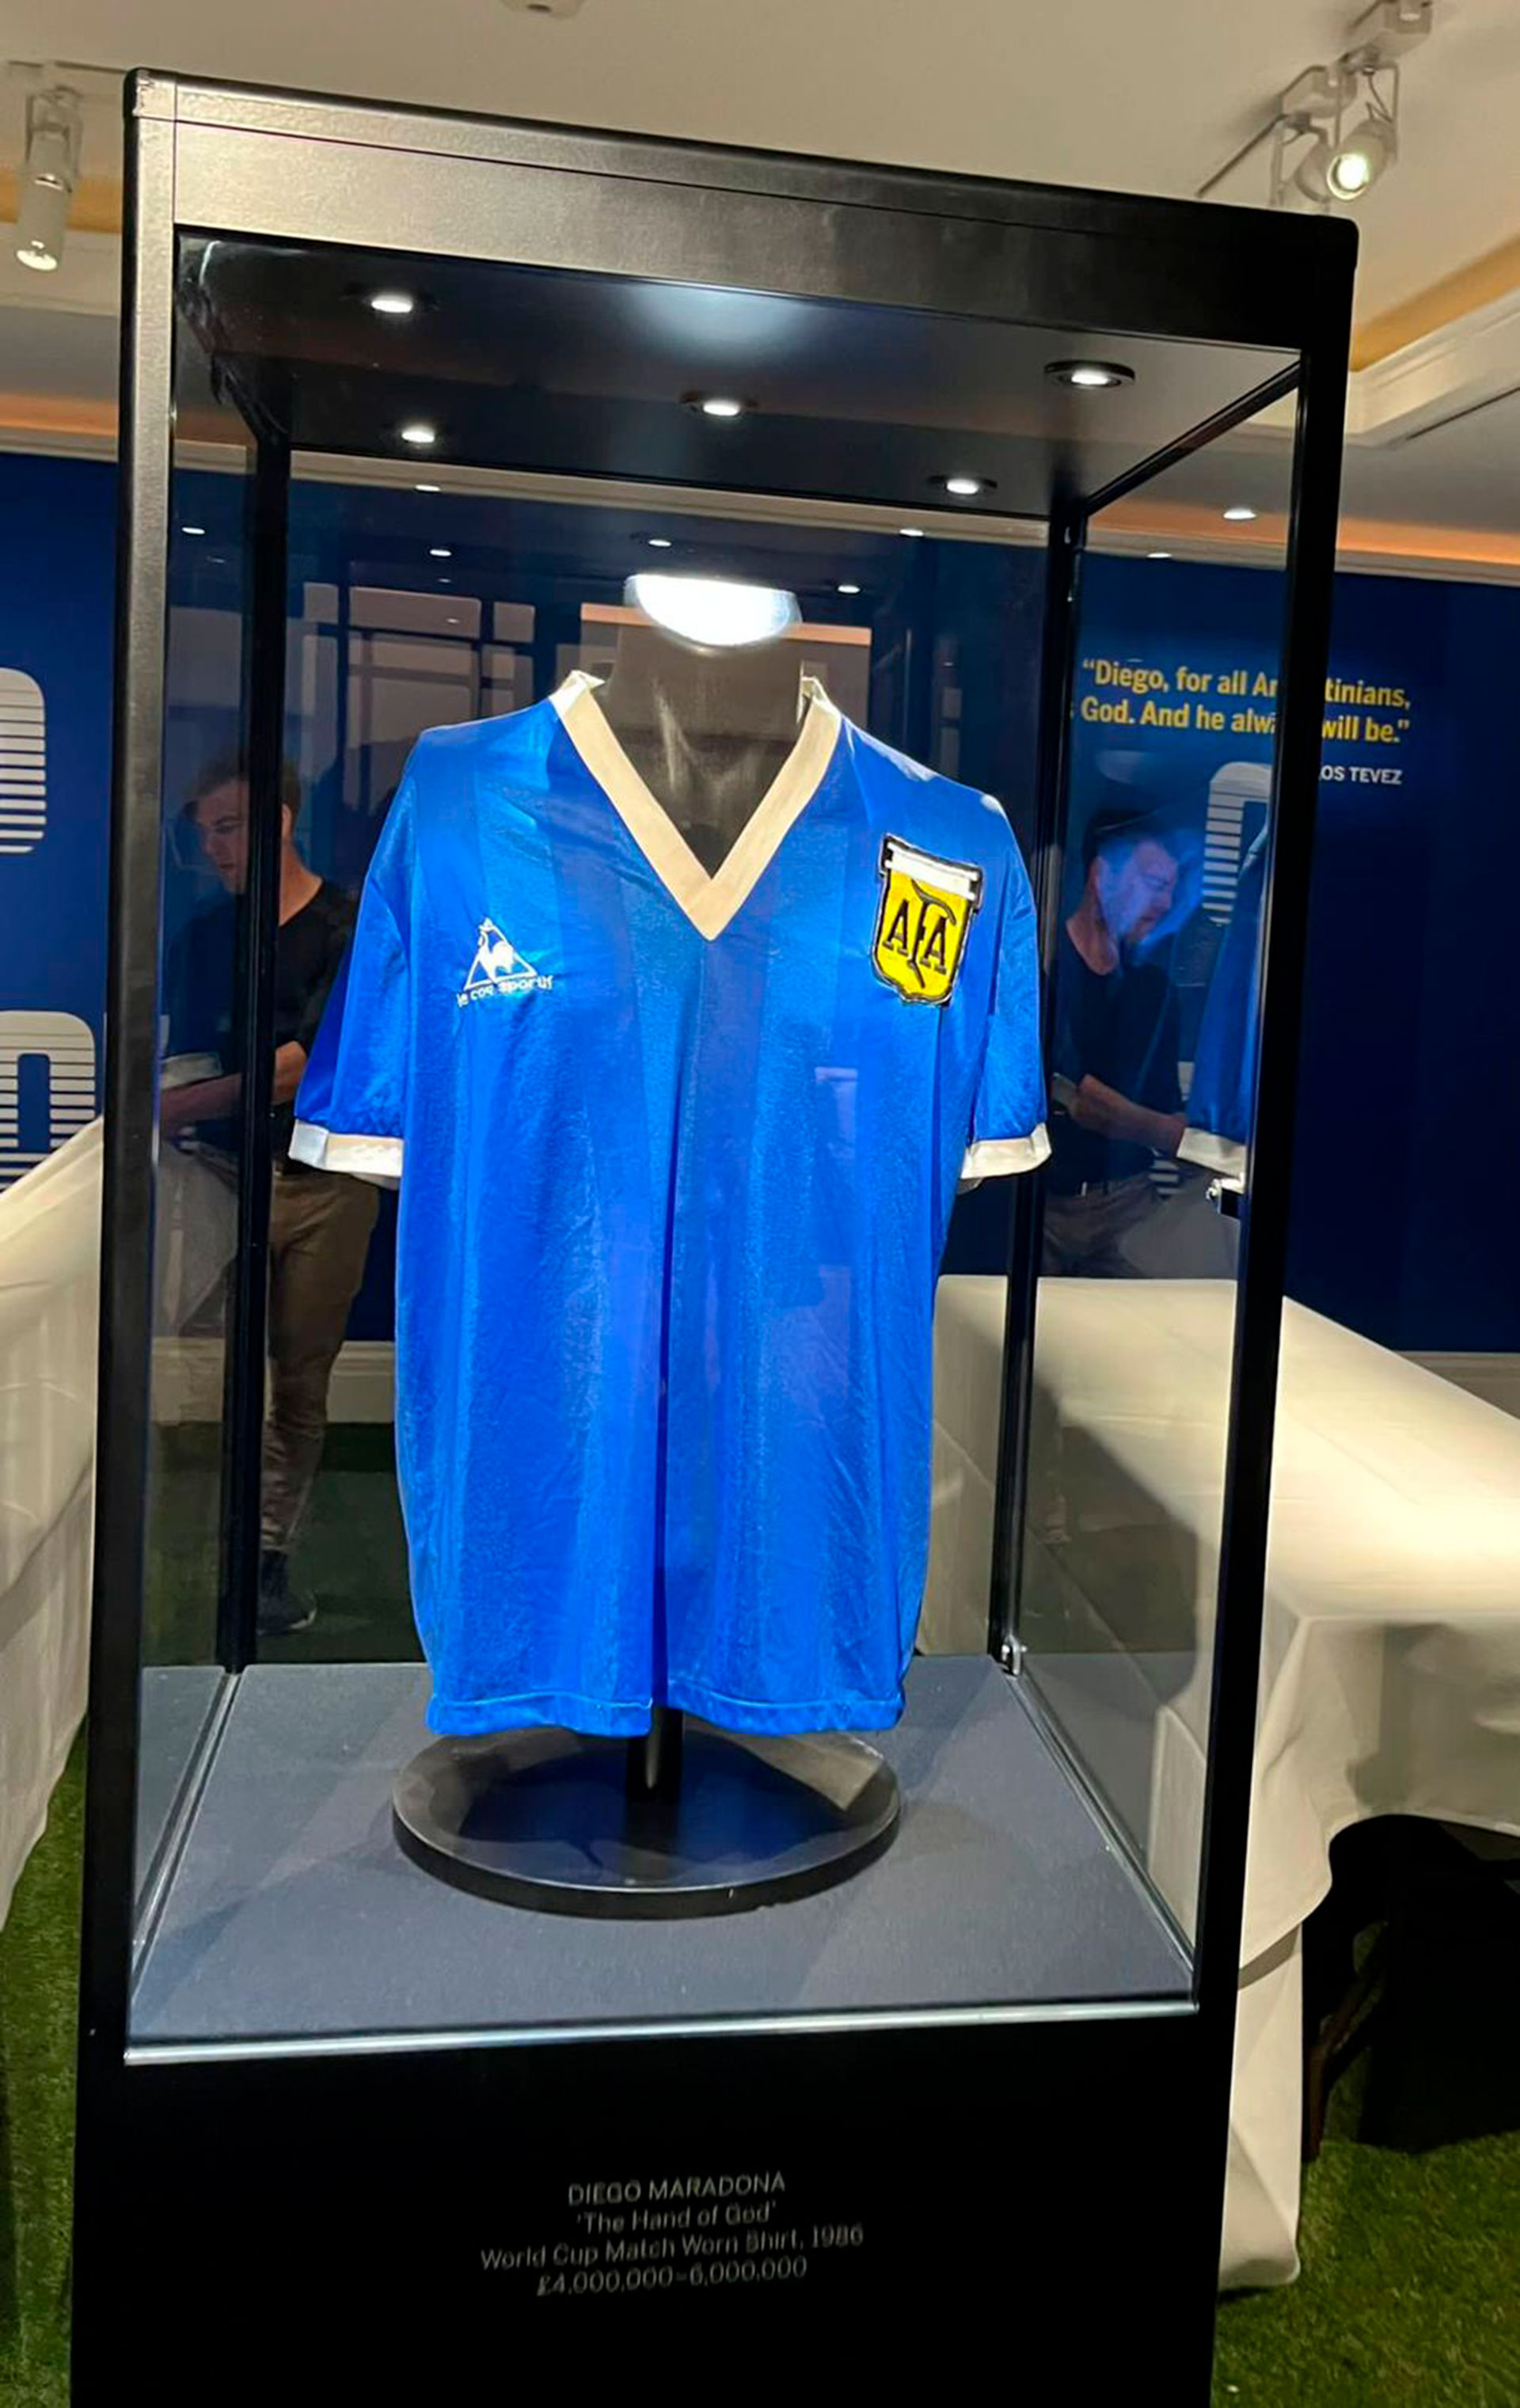 Habla el coleccionista argentino que busca comprar la camiseta de Maradona en la subasta récord: “Es el sable de San Martín del Siglo XX”